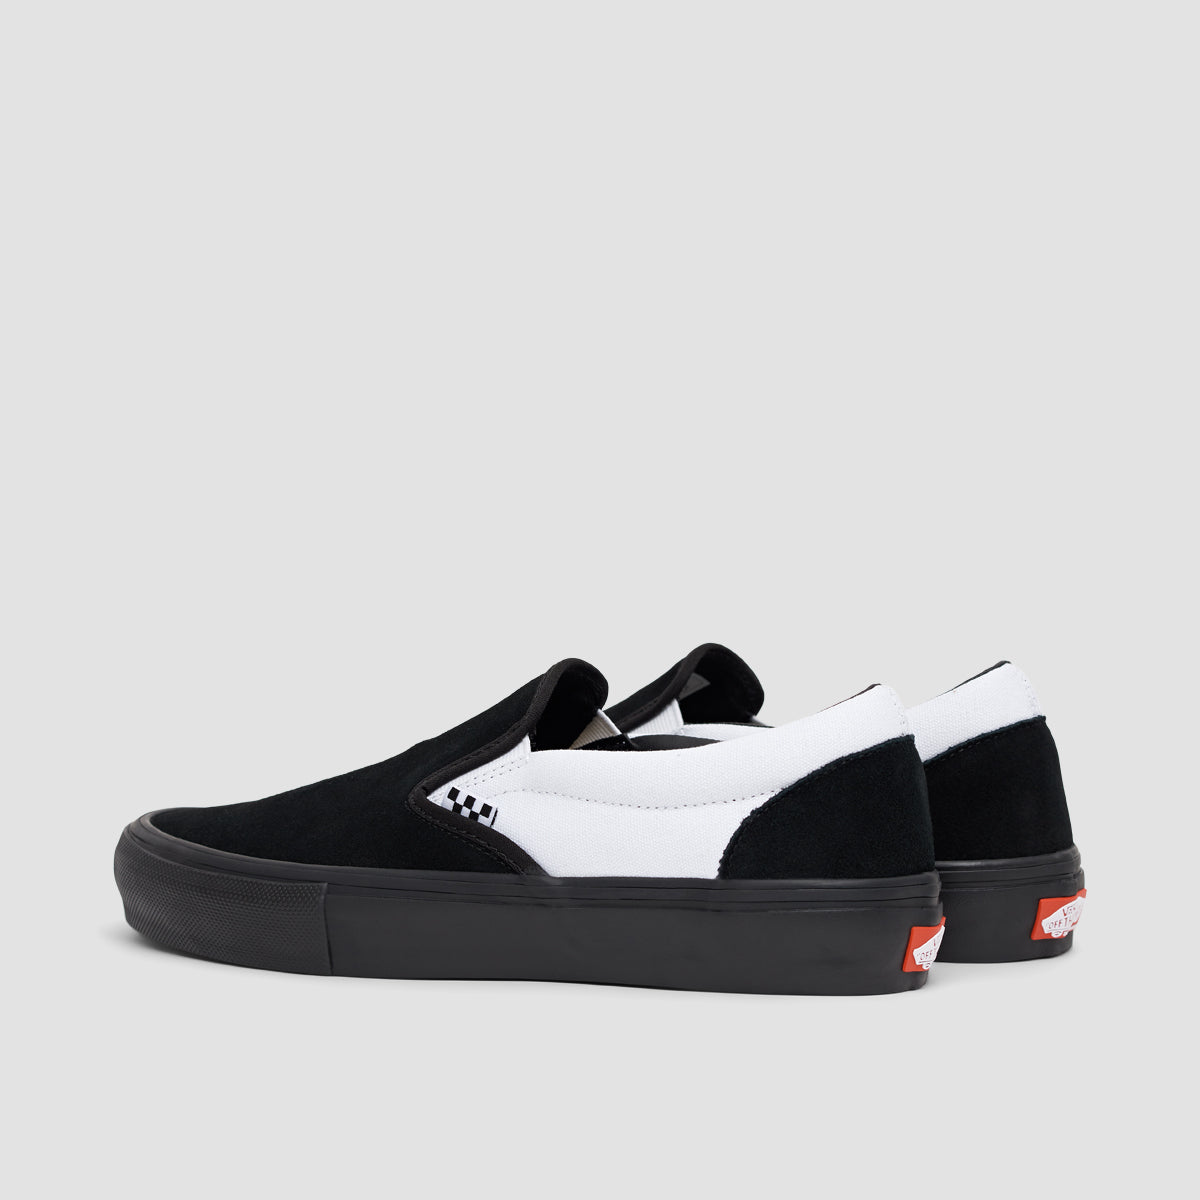 Vans Skate Slip-On Shoes - Black/Black/White